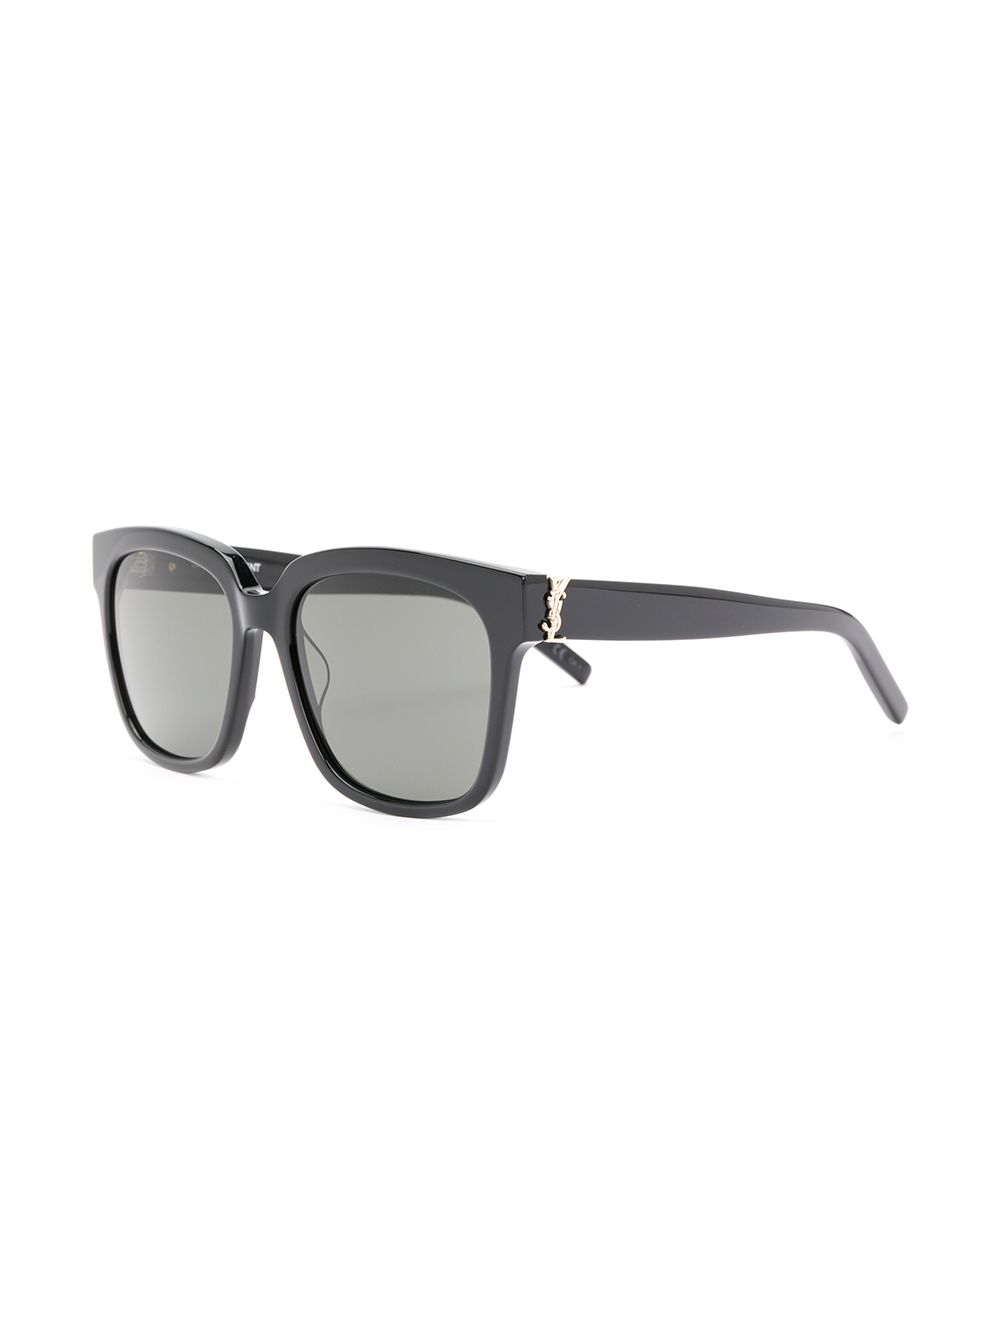 фото Saint laurent eyewear солнцезащитные очки 'sl m40' с монограммами